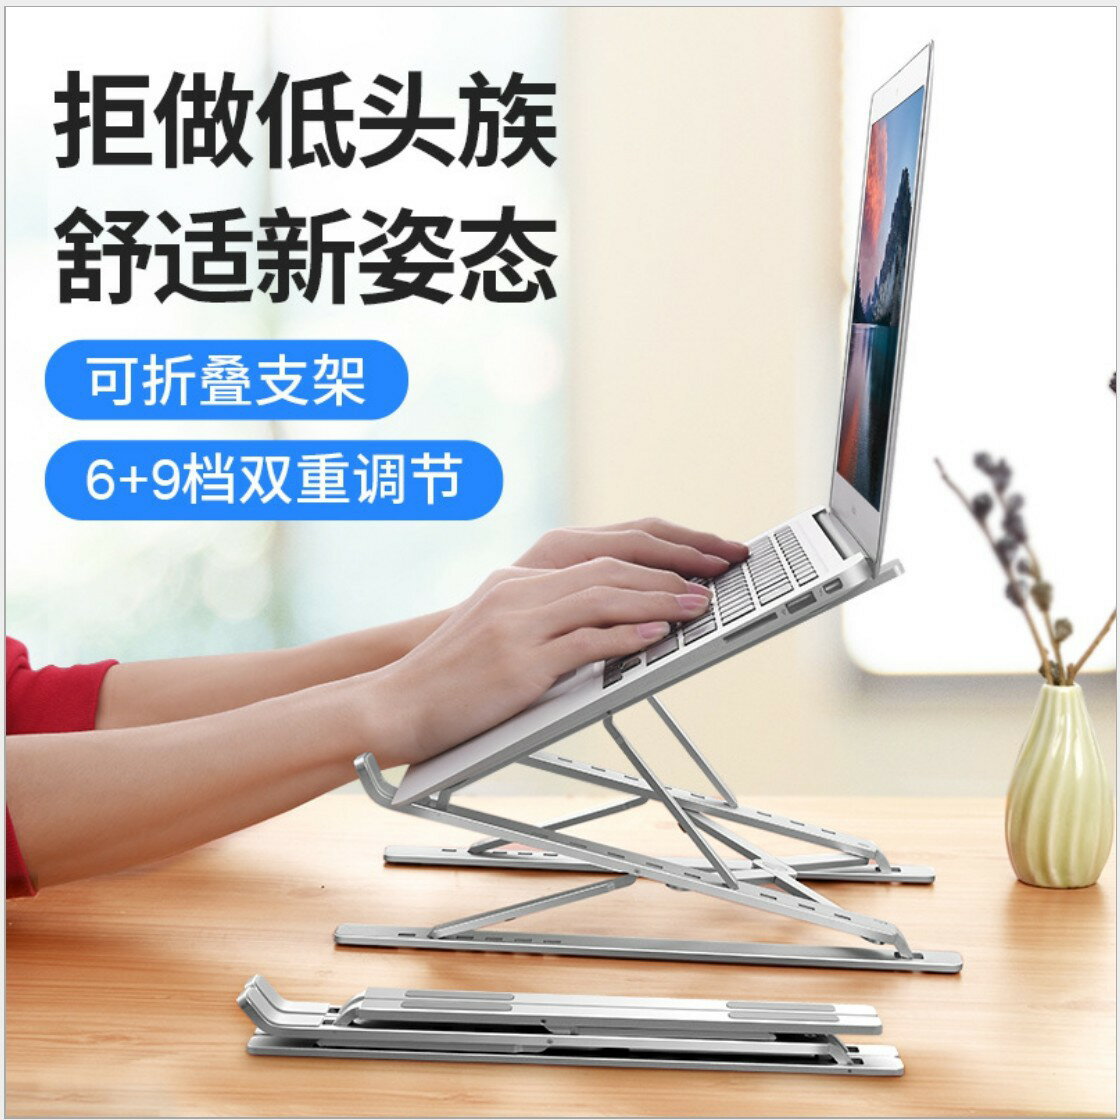 蘋果筆記本電腦支架鋁合金散熱器辦公桌面增高懸空升降折疊架子適用于MacBook華為平板電腦手提升降雙層底座